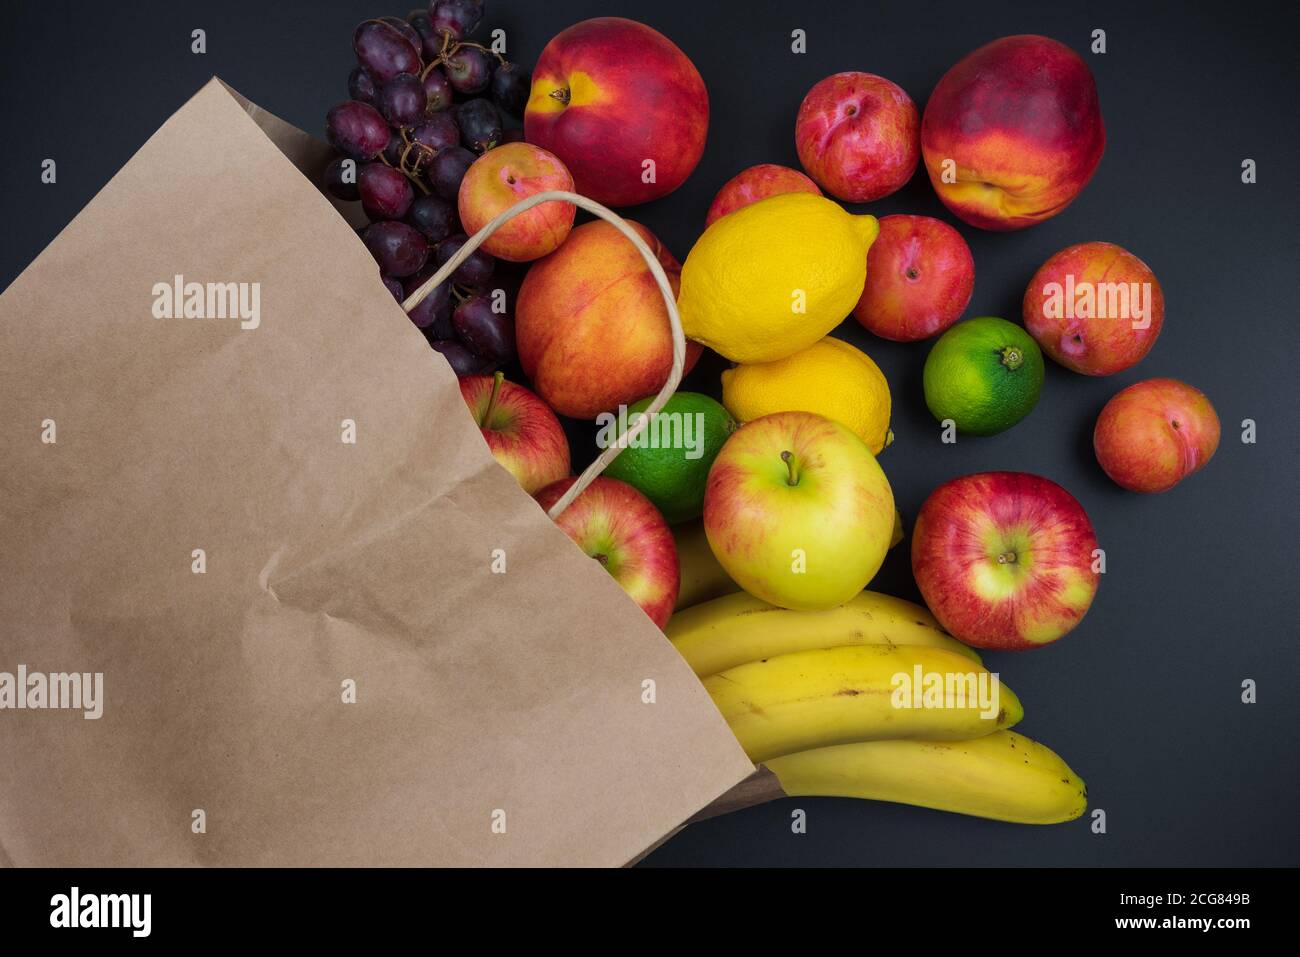 différents fruits frais biologiques dans le papier shopping sur fond de table noire, concept de saine alimentation Banque D'Images